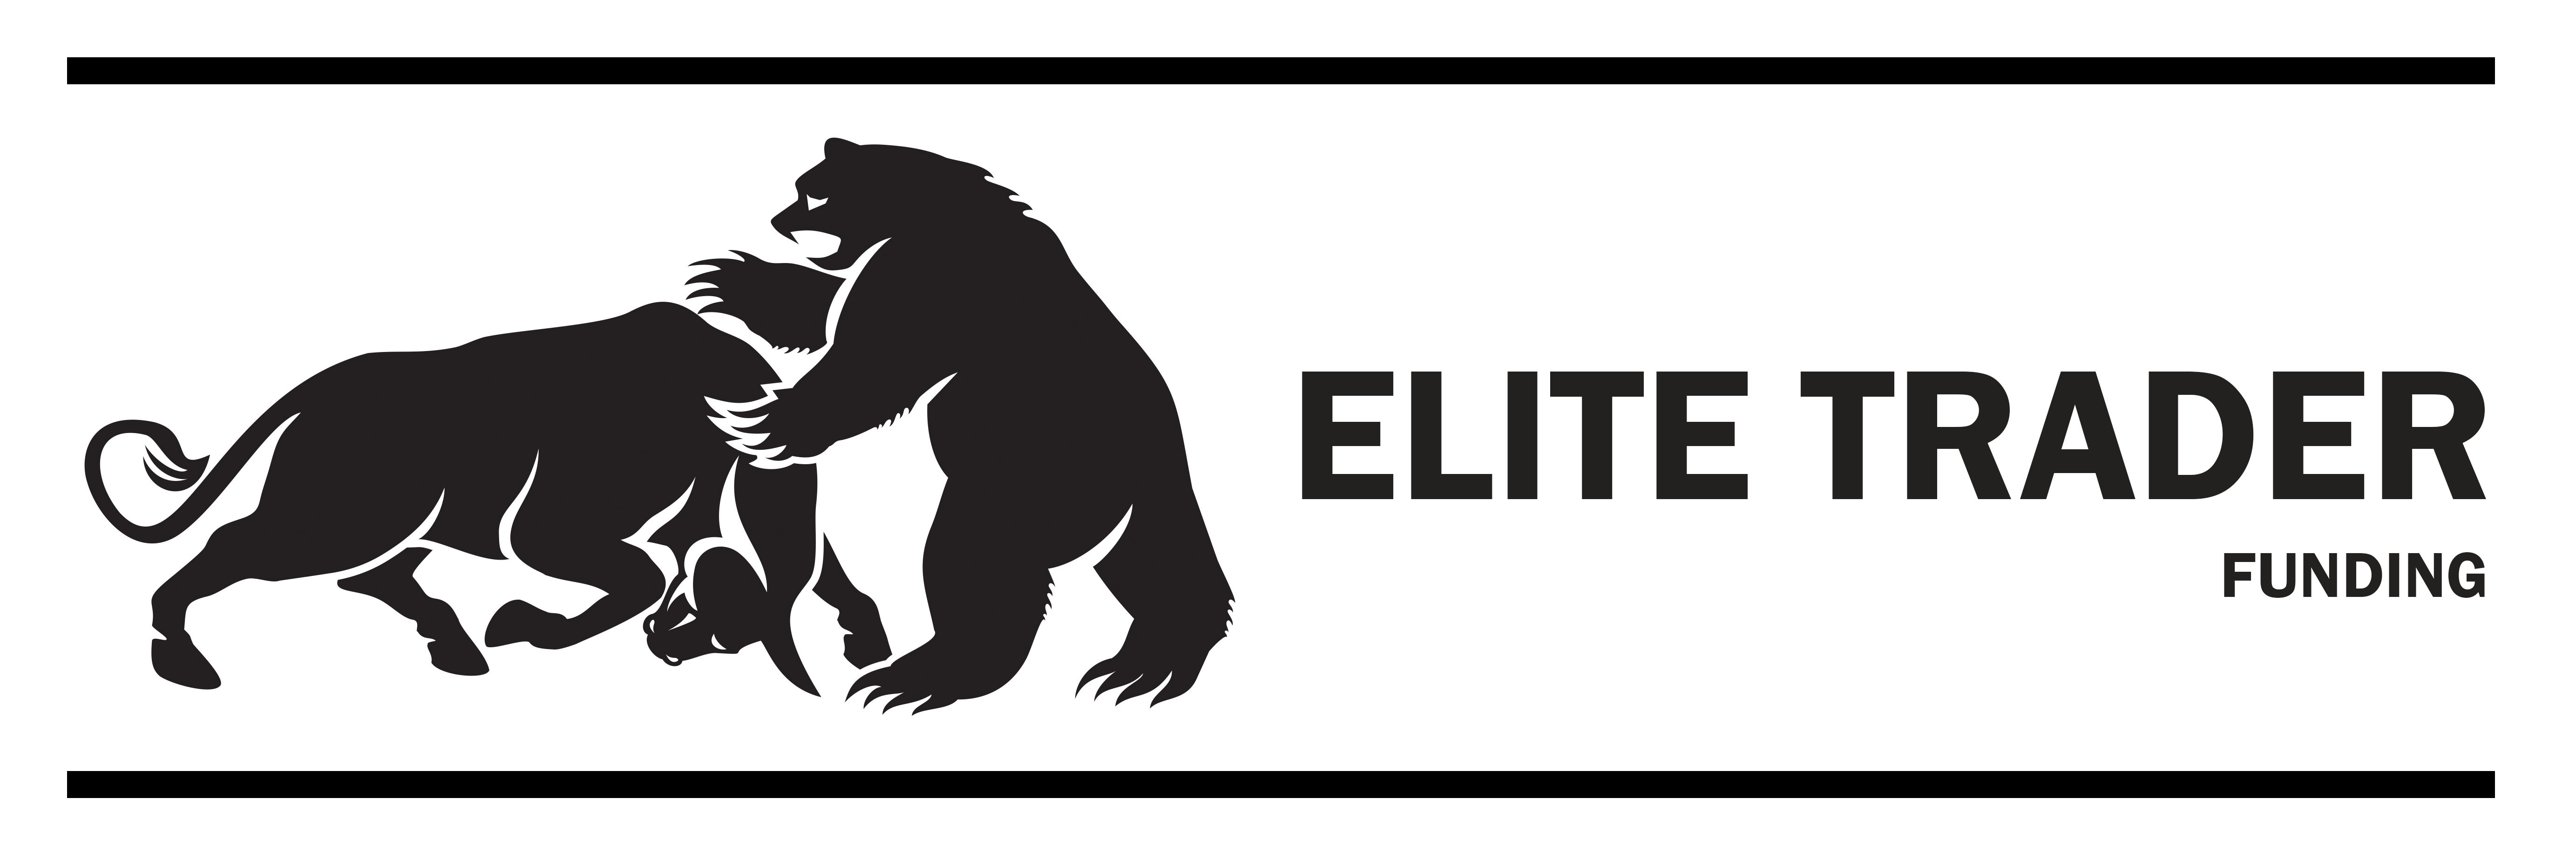 Elite Trader Funding LLC